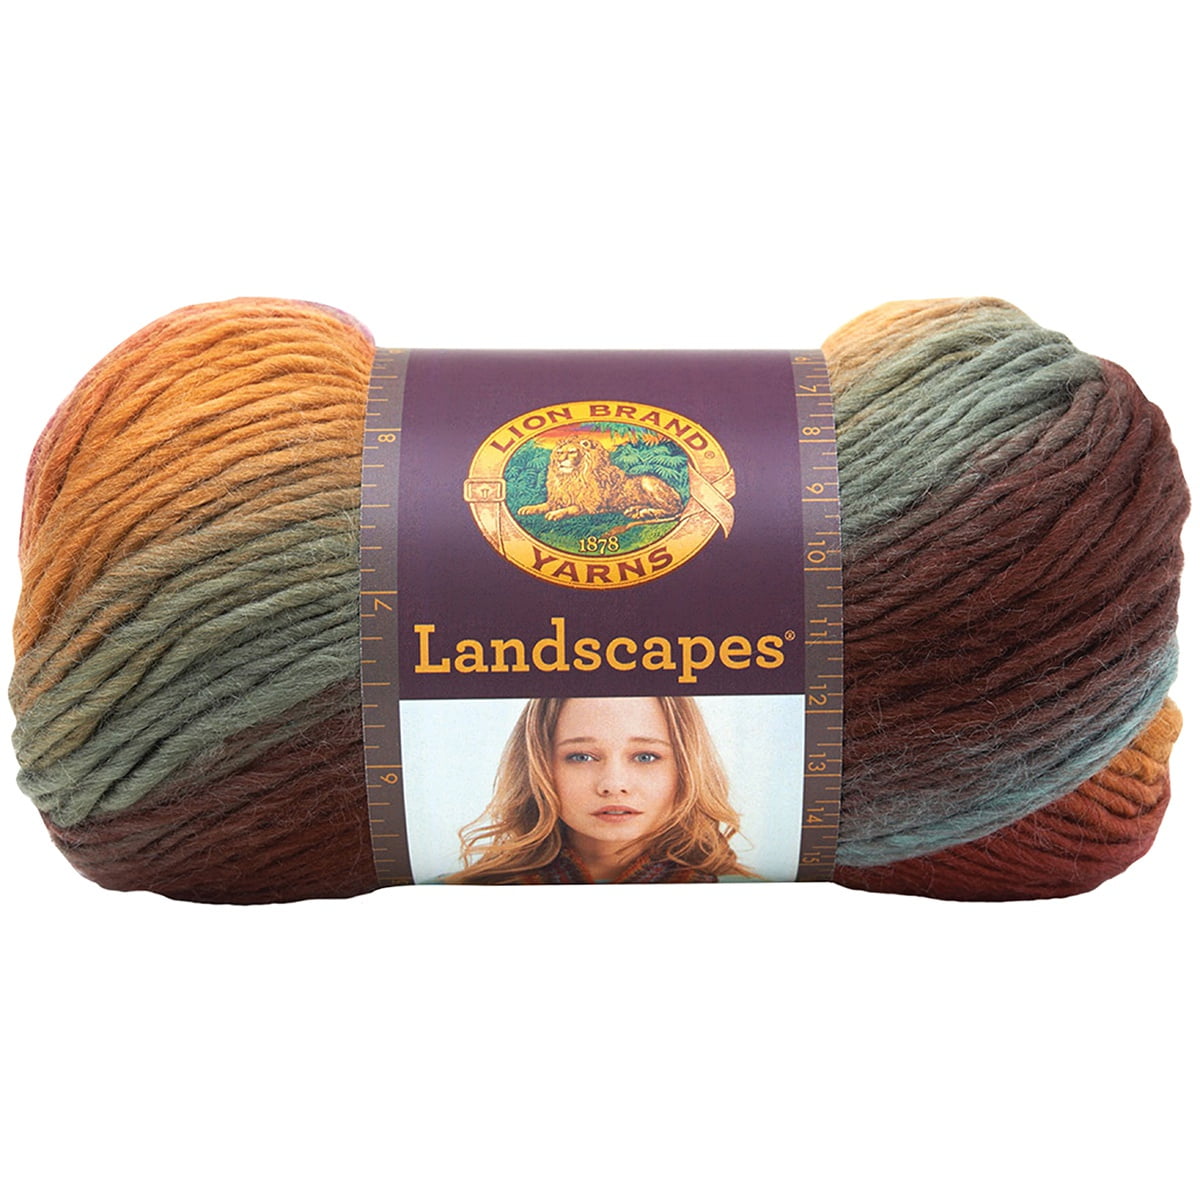 Lion Brand Galaxy Landscapes Yarn (4 - Medium), Free Shipping at Yarn Canada